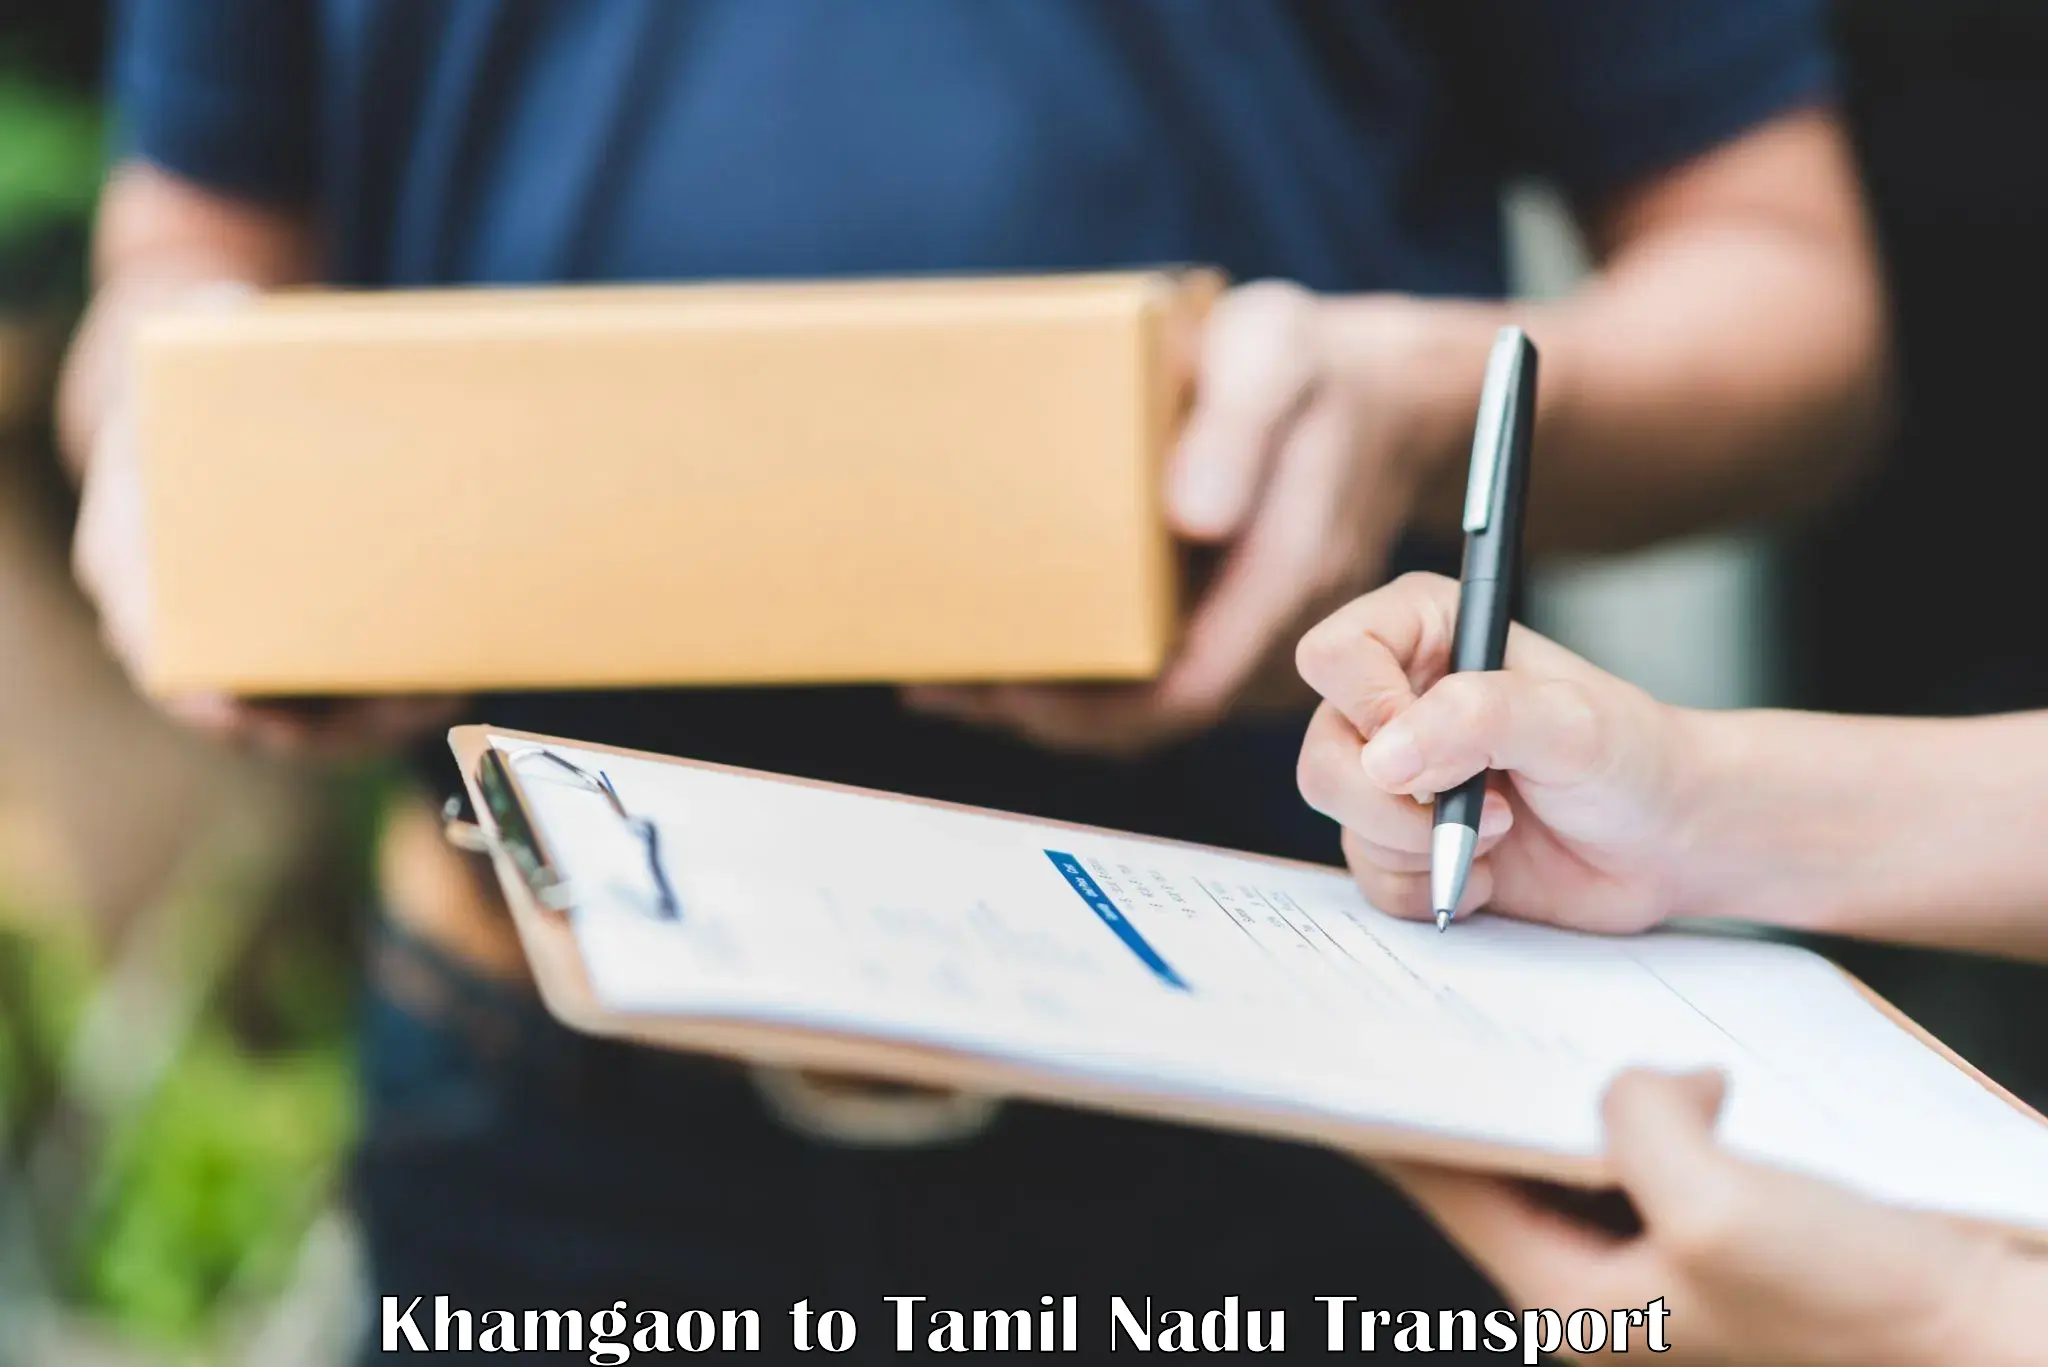 Furniture transport service Khamgaon to Vickramasingapuram